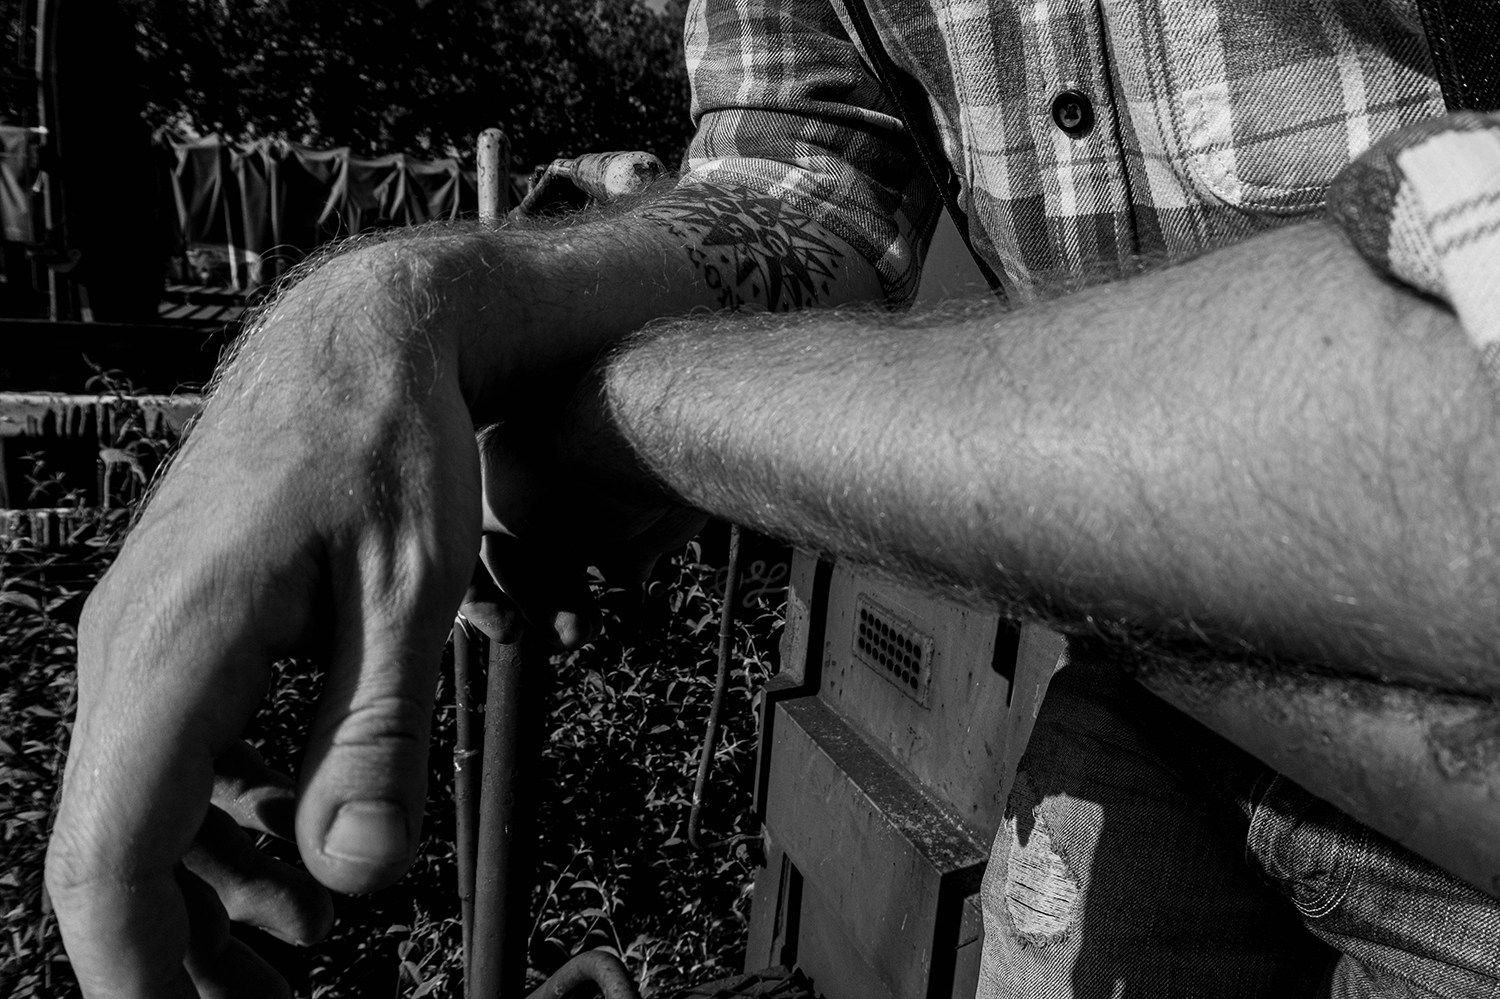 Photographie noir et blanc des bras croisés d'un modèle homme sur une rembarde métallique